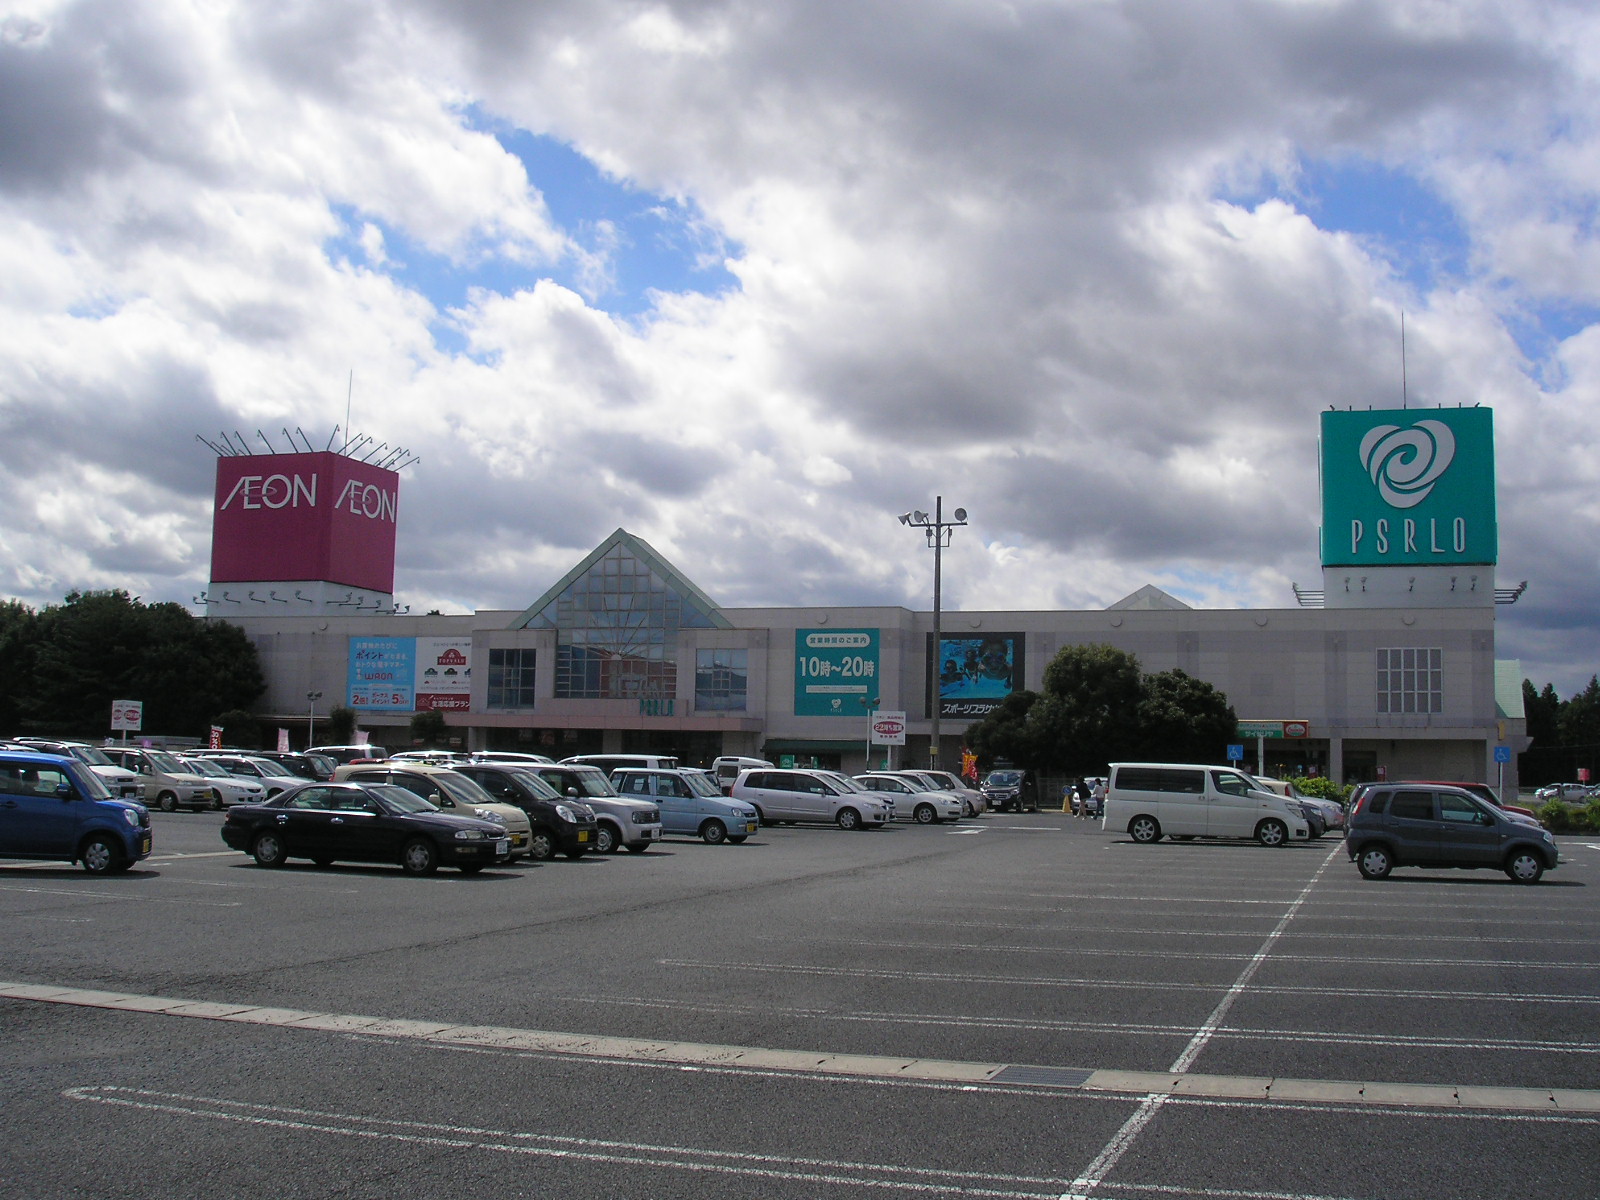 Shopping centre. Hitachi 1266m to Omiya shopping center Pizarro (shopping center)